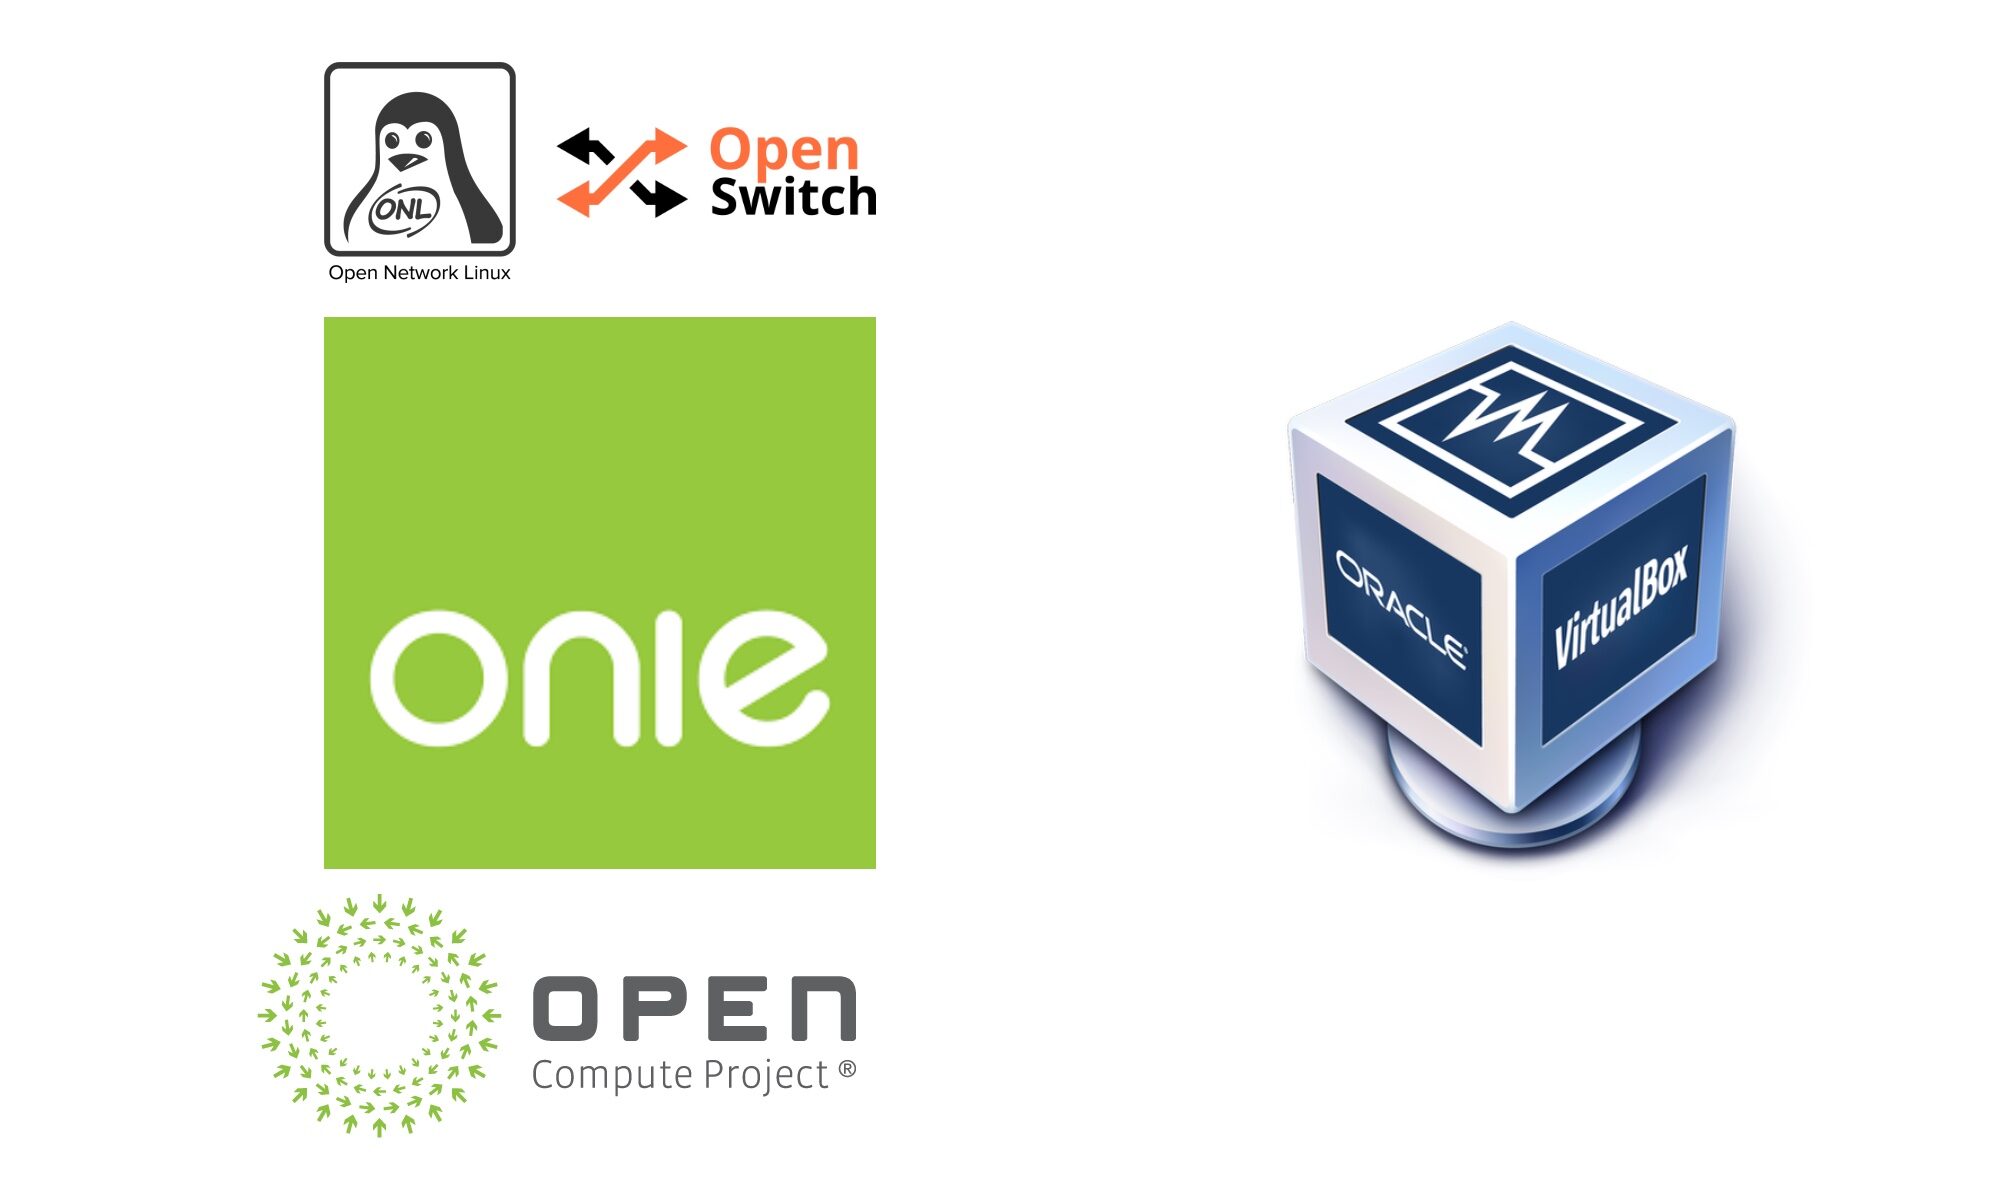 ONIE Open Network Linux Open Switch